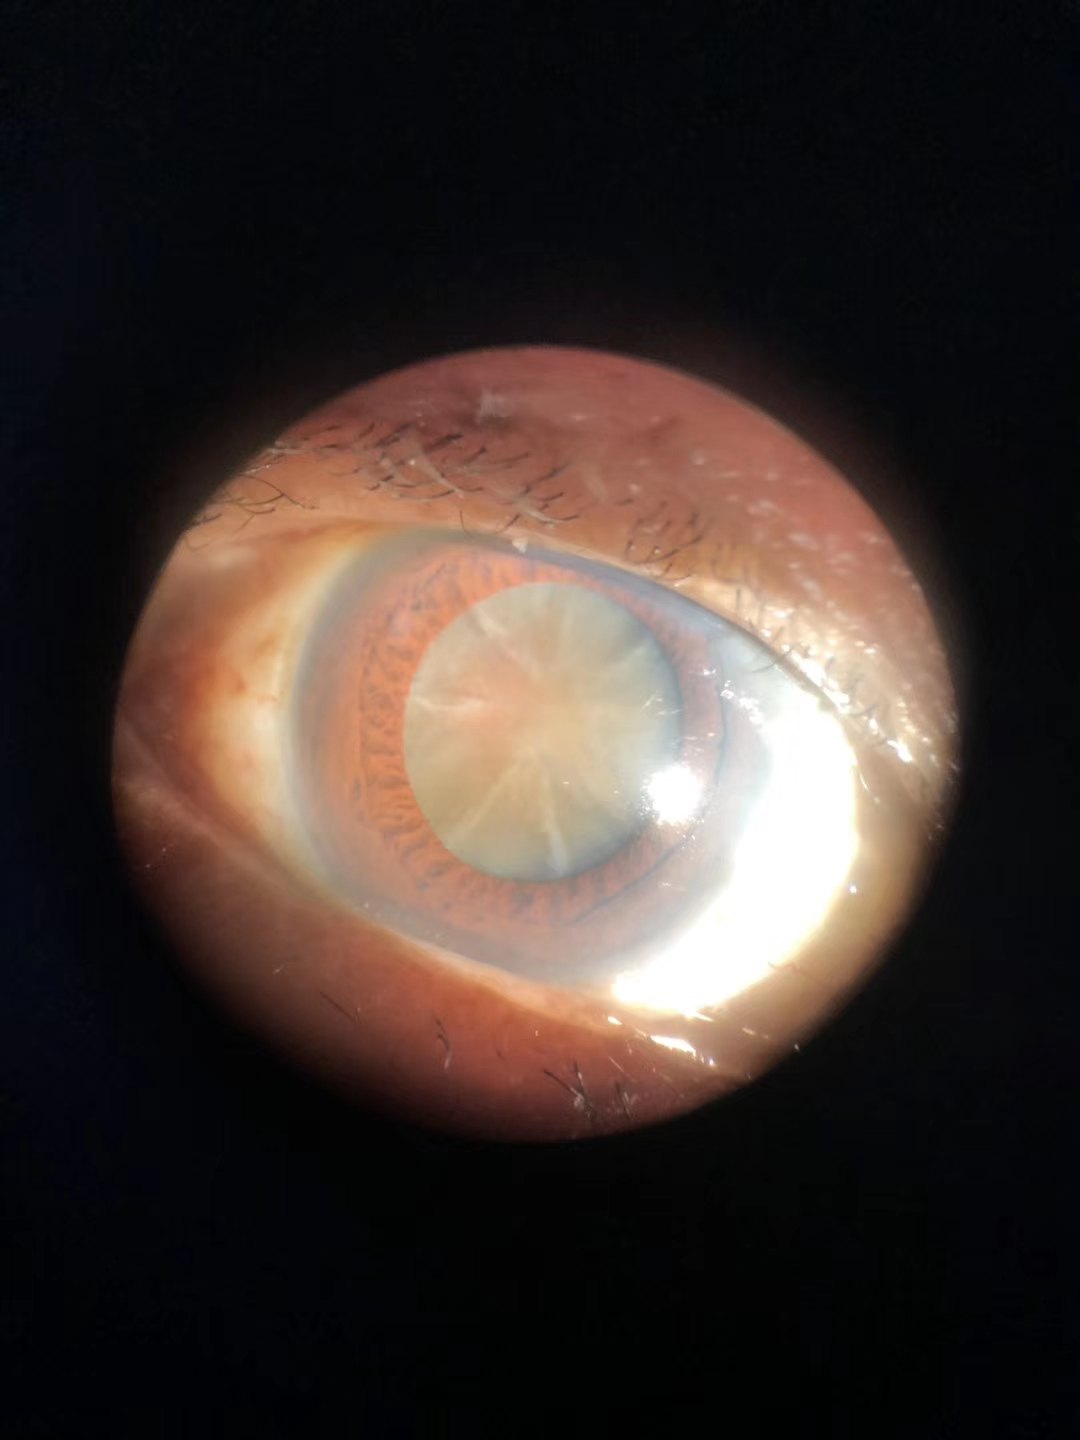 高端晶体手术和icl手术及激光手术漫谈 近视眼手术 近视眼手术手术